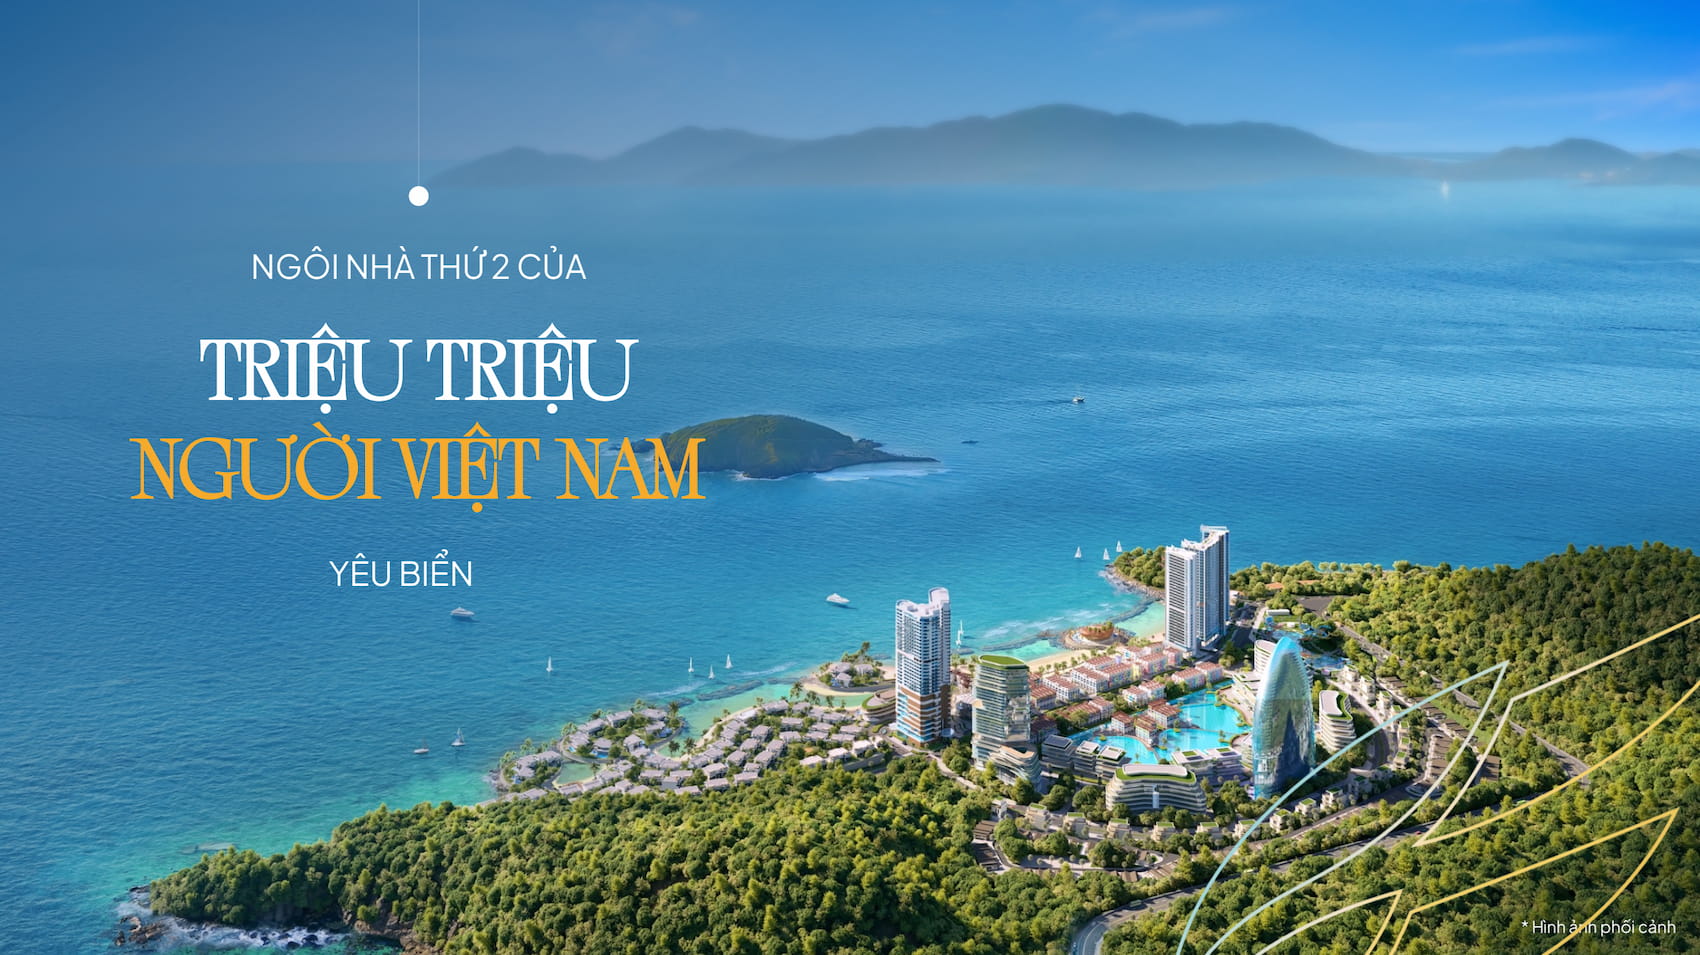 Libera Nha Trang - Ngôi nhà Thứ 2 của triệu người Việt yêu biển!